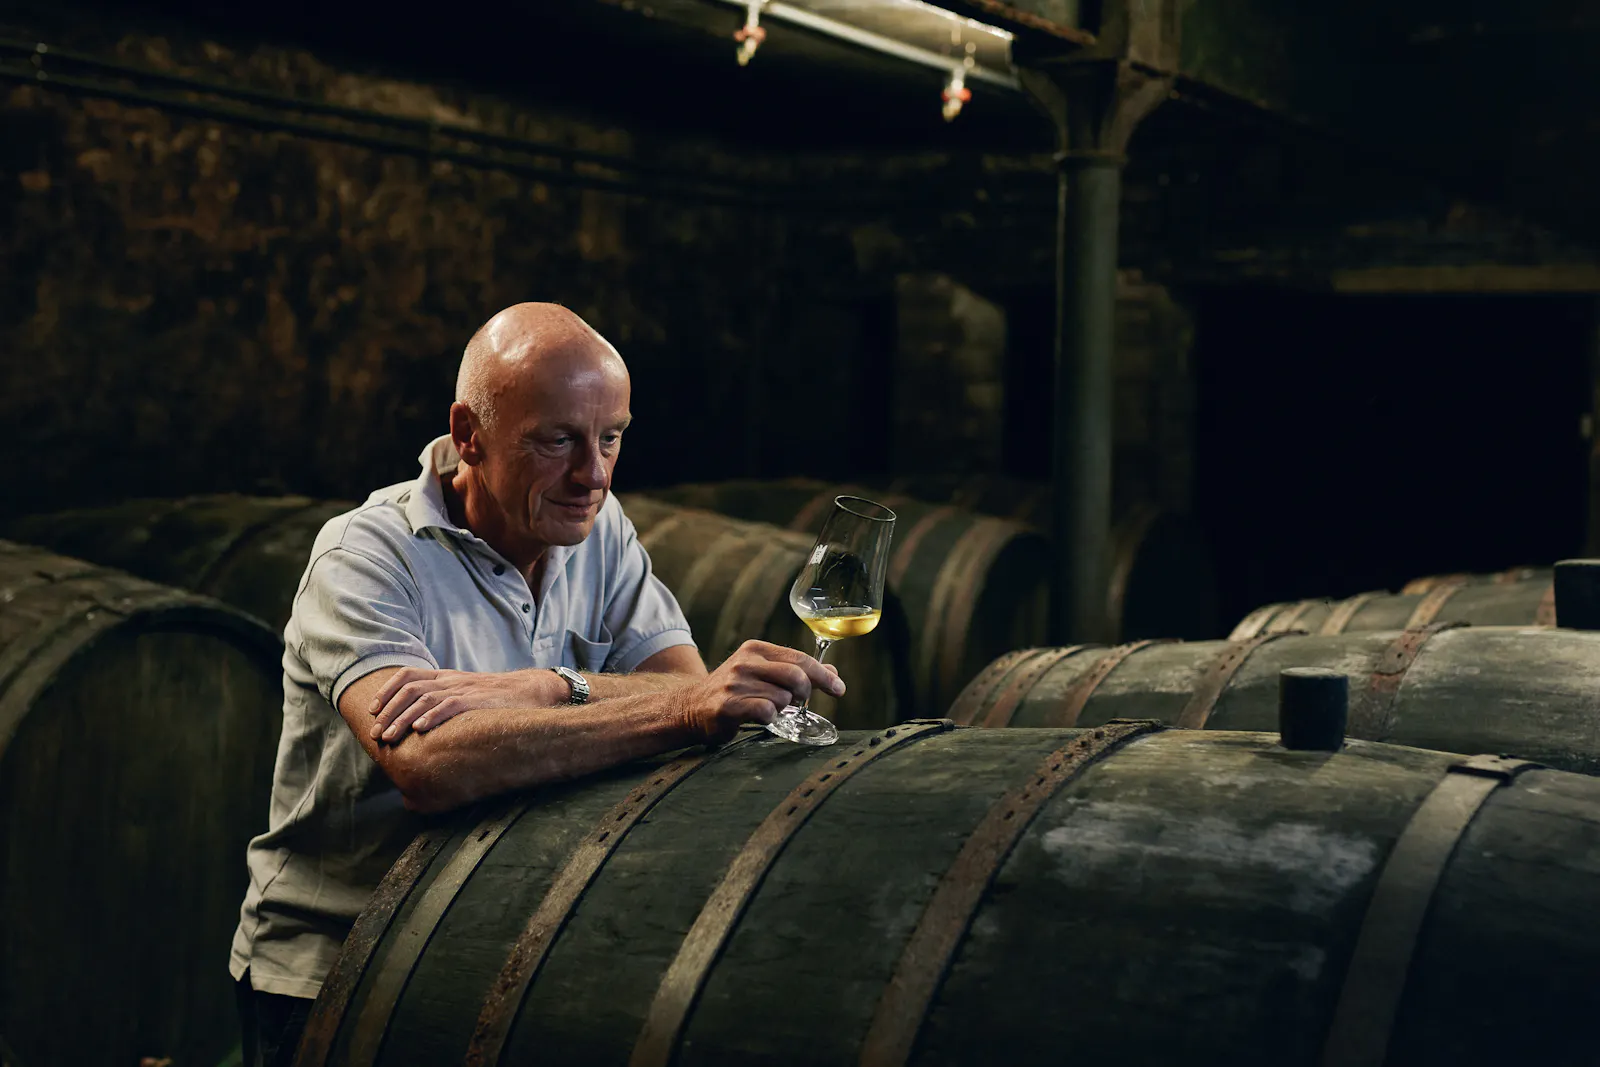 Der Winzer Egon Müller steht in seinem Weinkeller und hat ein Glas mit Weißwein in der Hand.